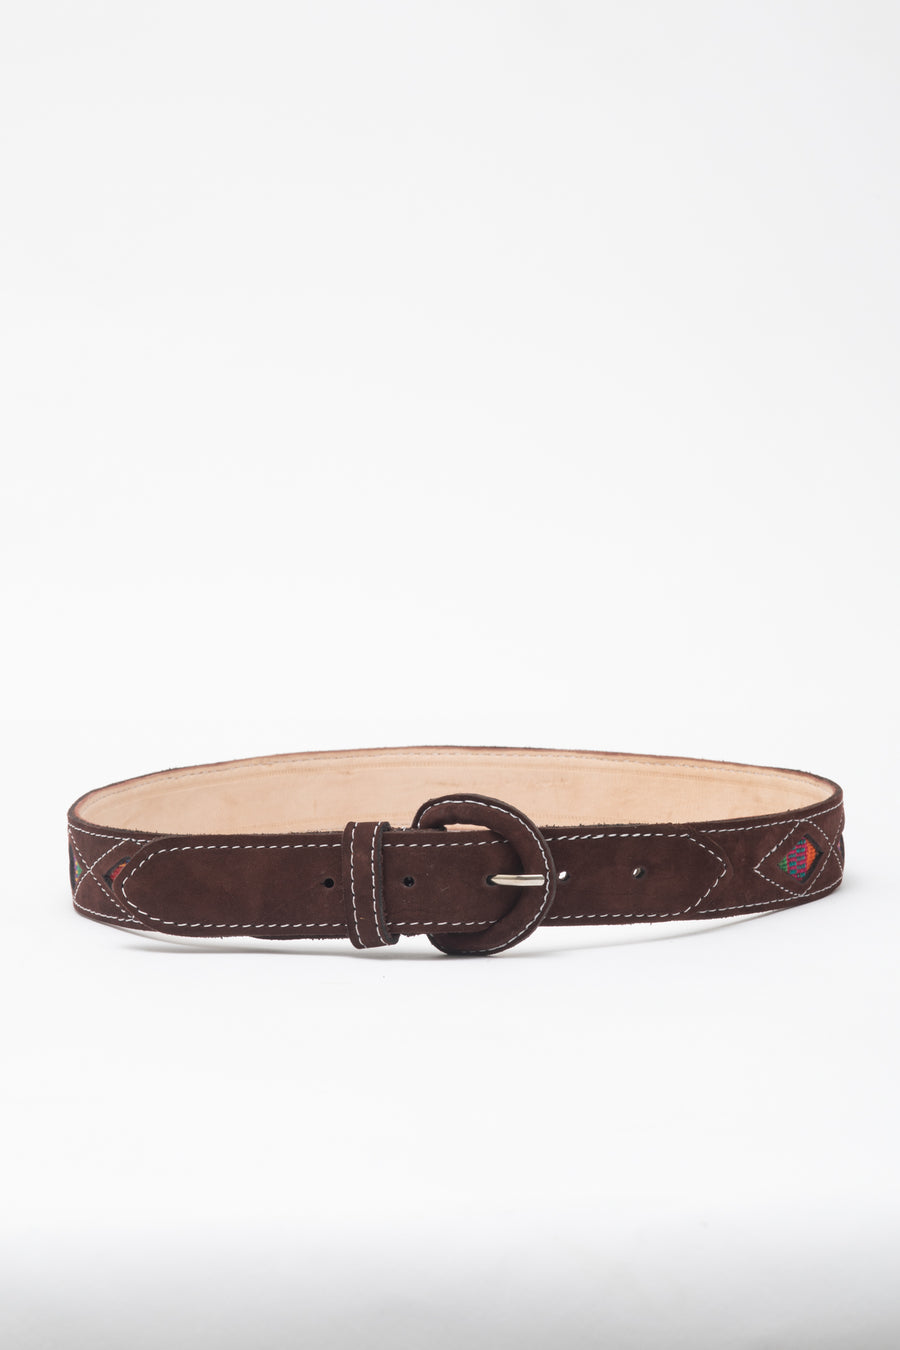 Ventana Handmade Leather Belt